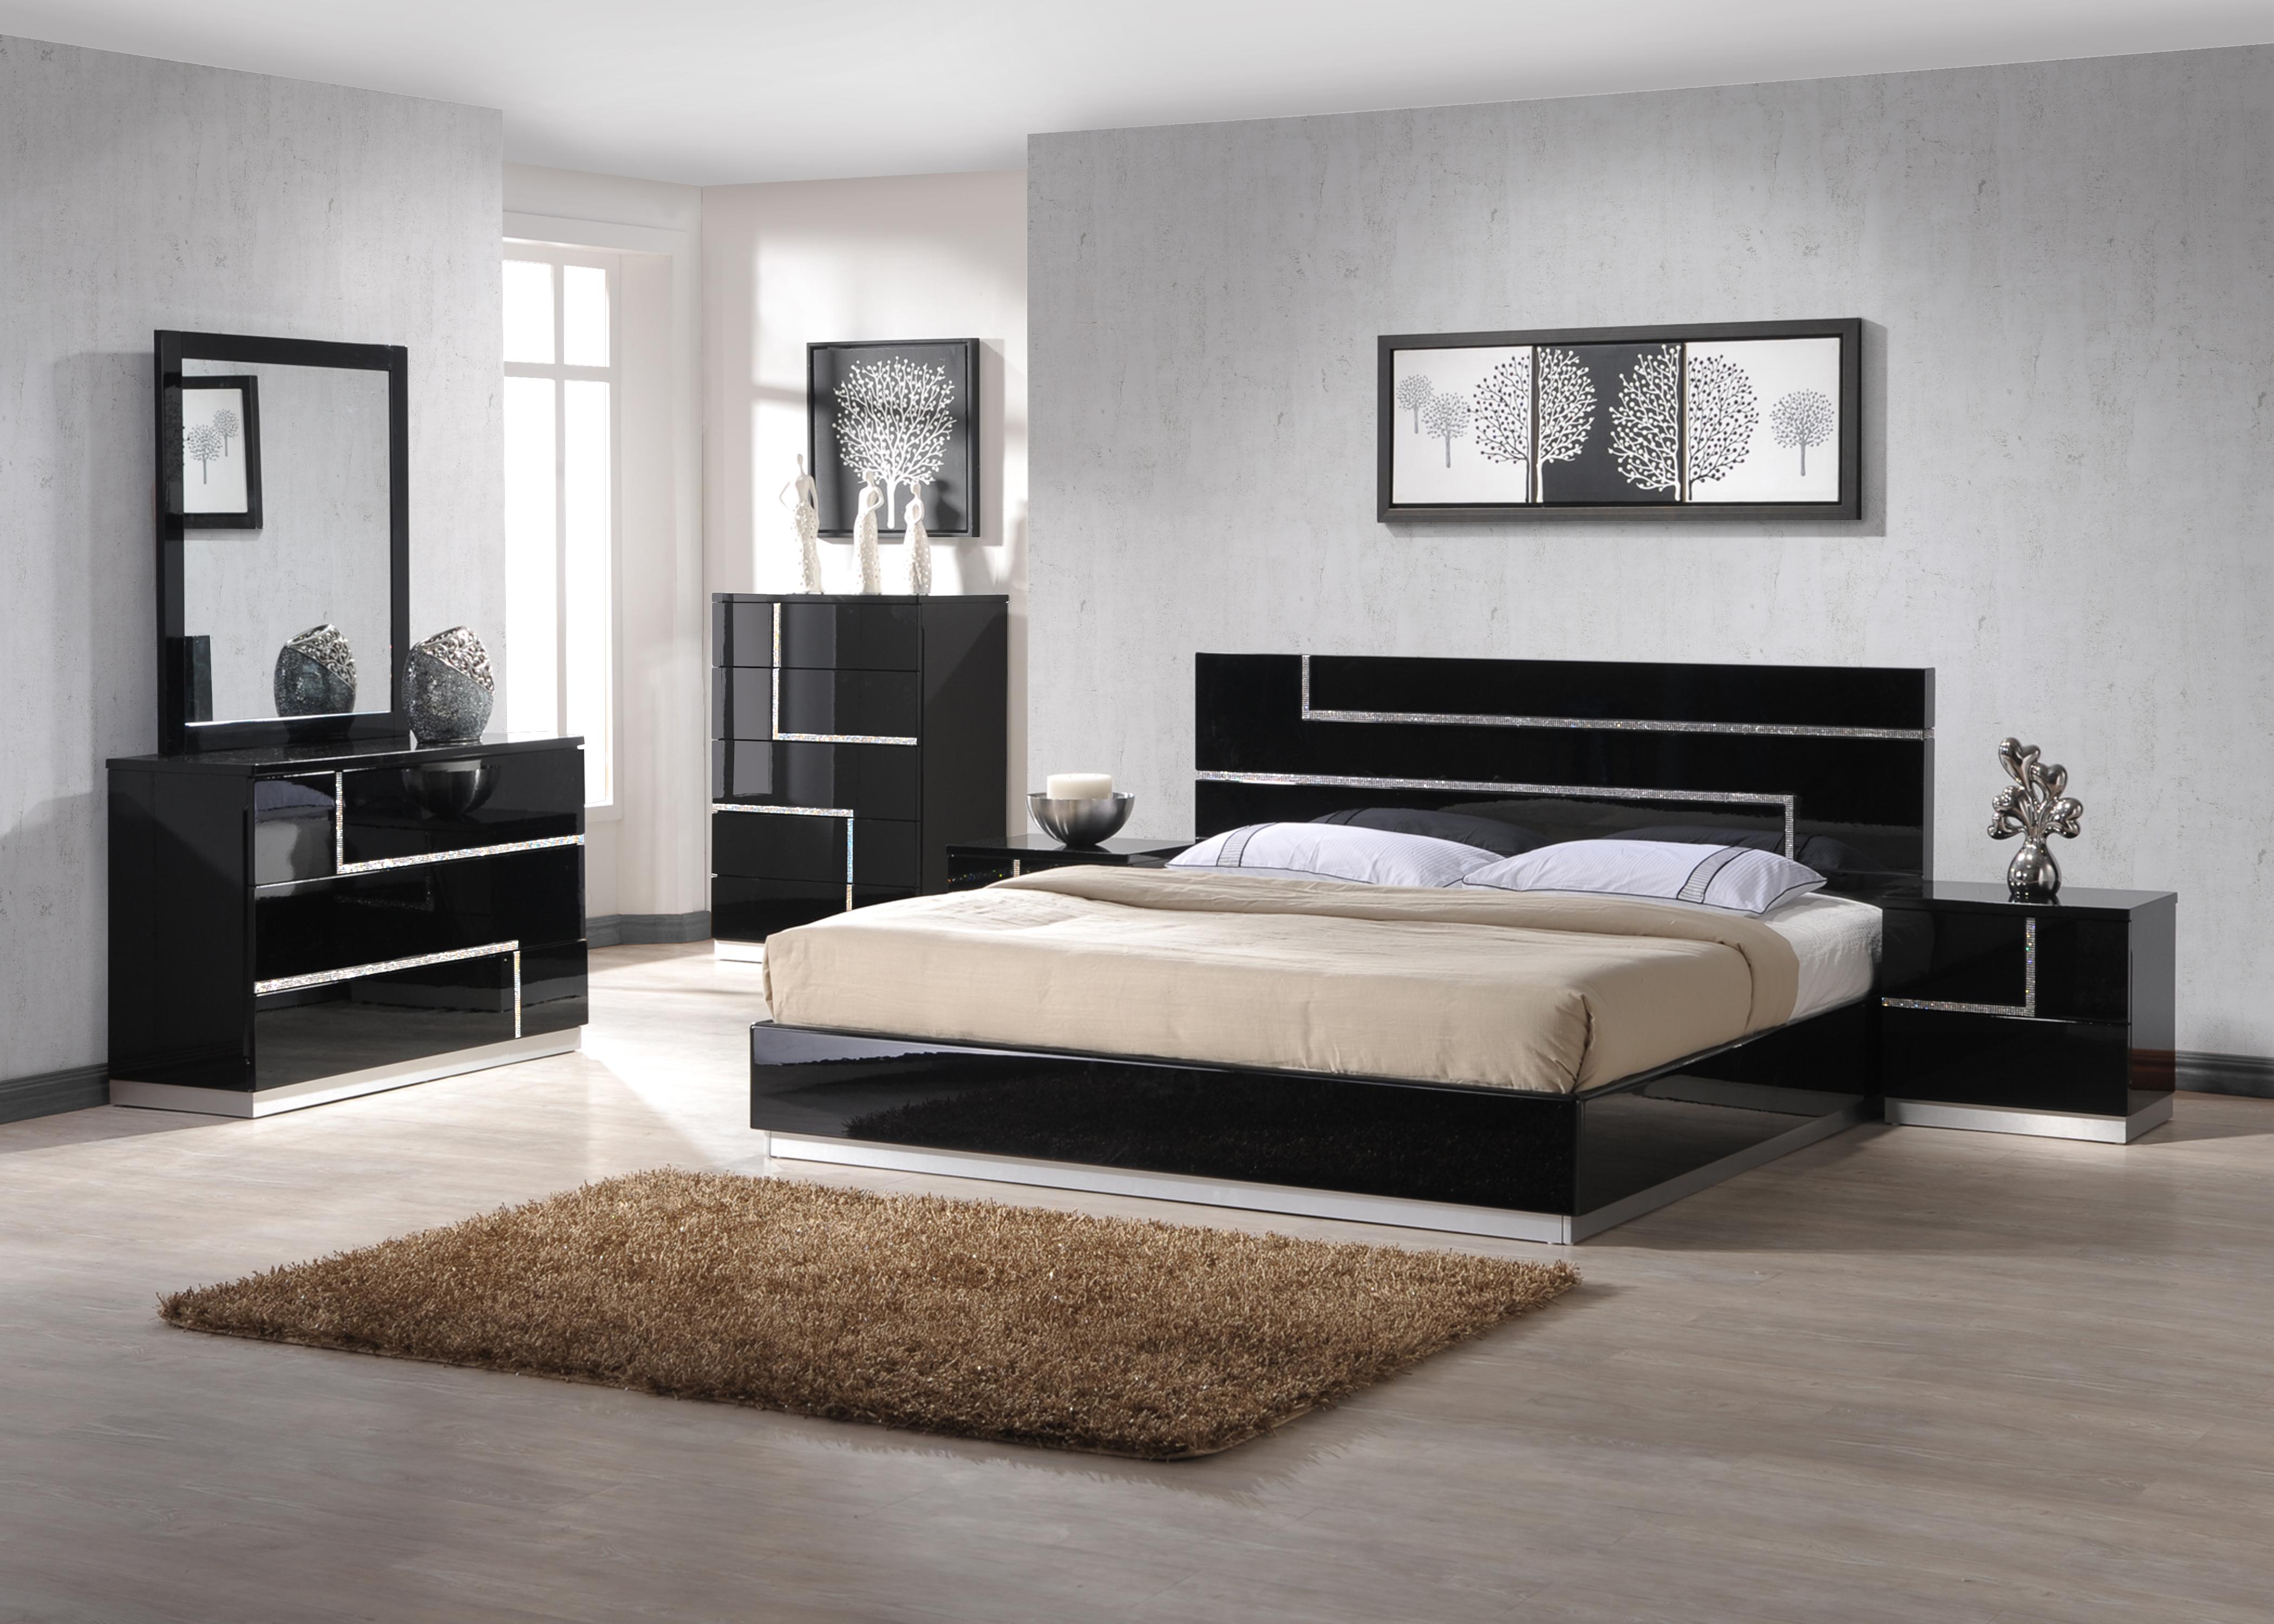 

    
Glossy Black w/Crystals Inlay Lowrey Platform QUEEN Bedroom Set 3P Contemporary
